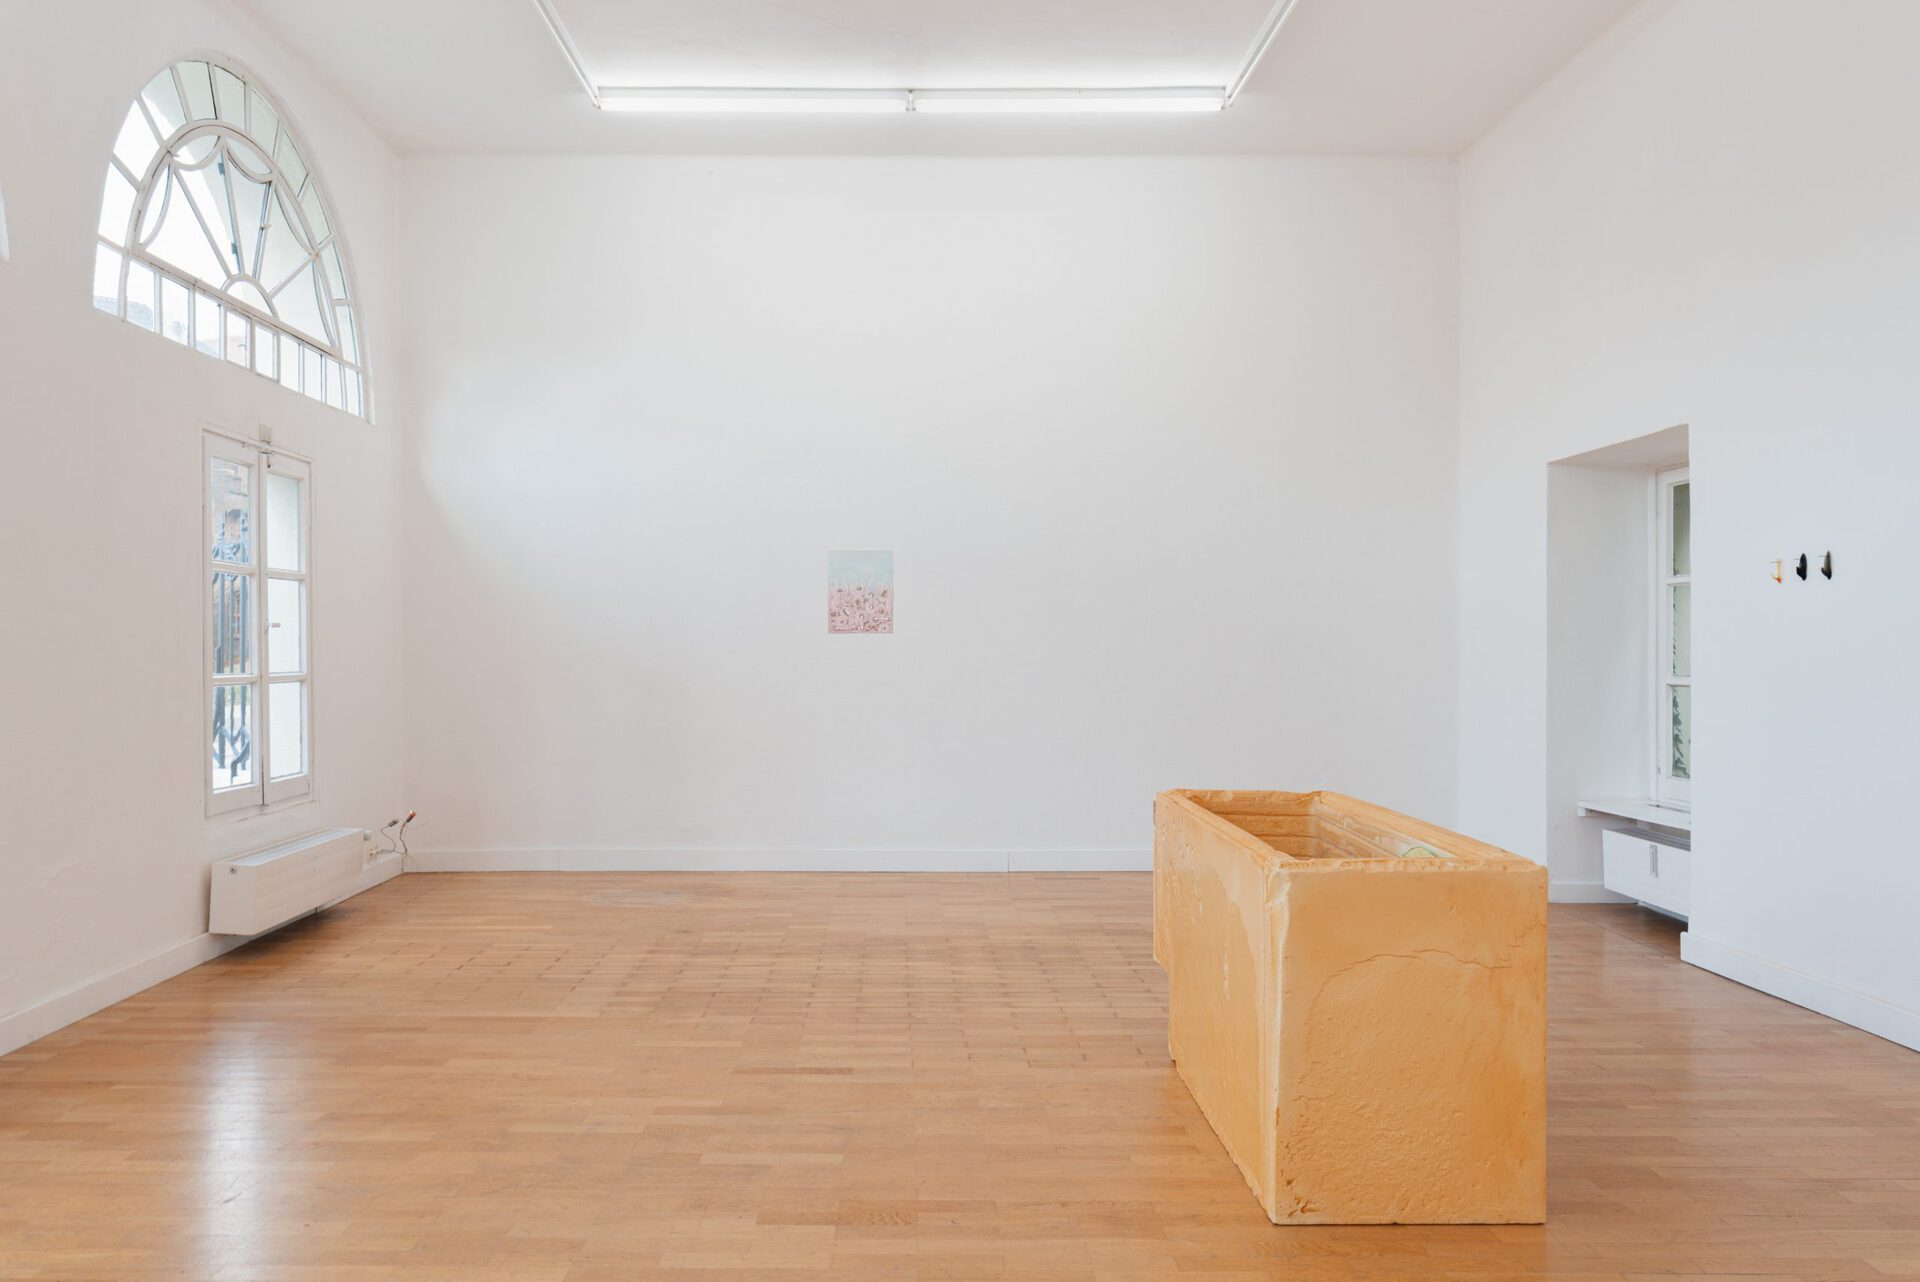 The Living House, Exhibition View at Kunstverein Braunschweig 2021, Courtesy the artists and Kunstverein Braunschweig. Photo: Stefan Stark